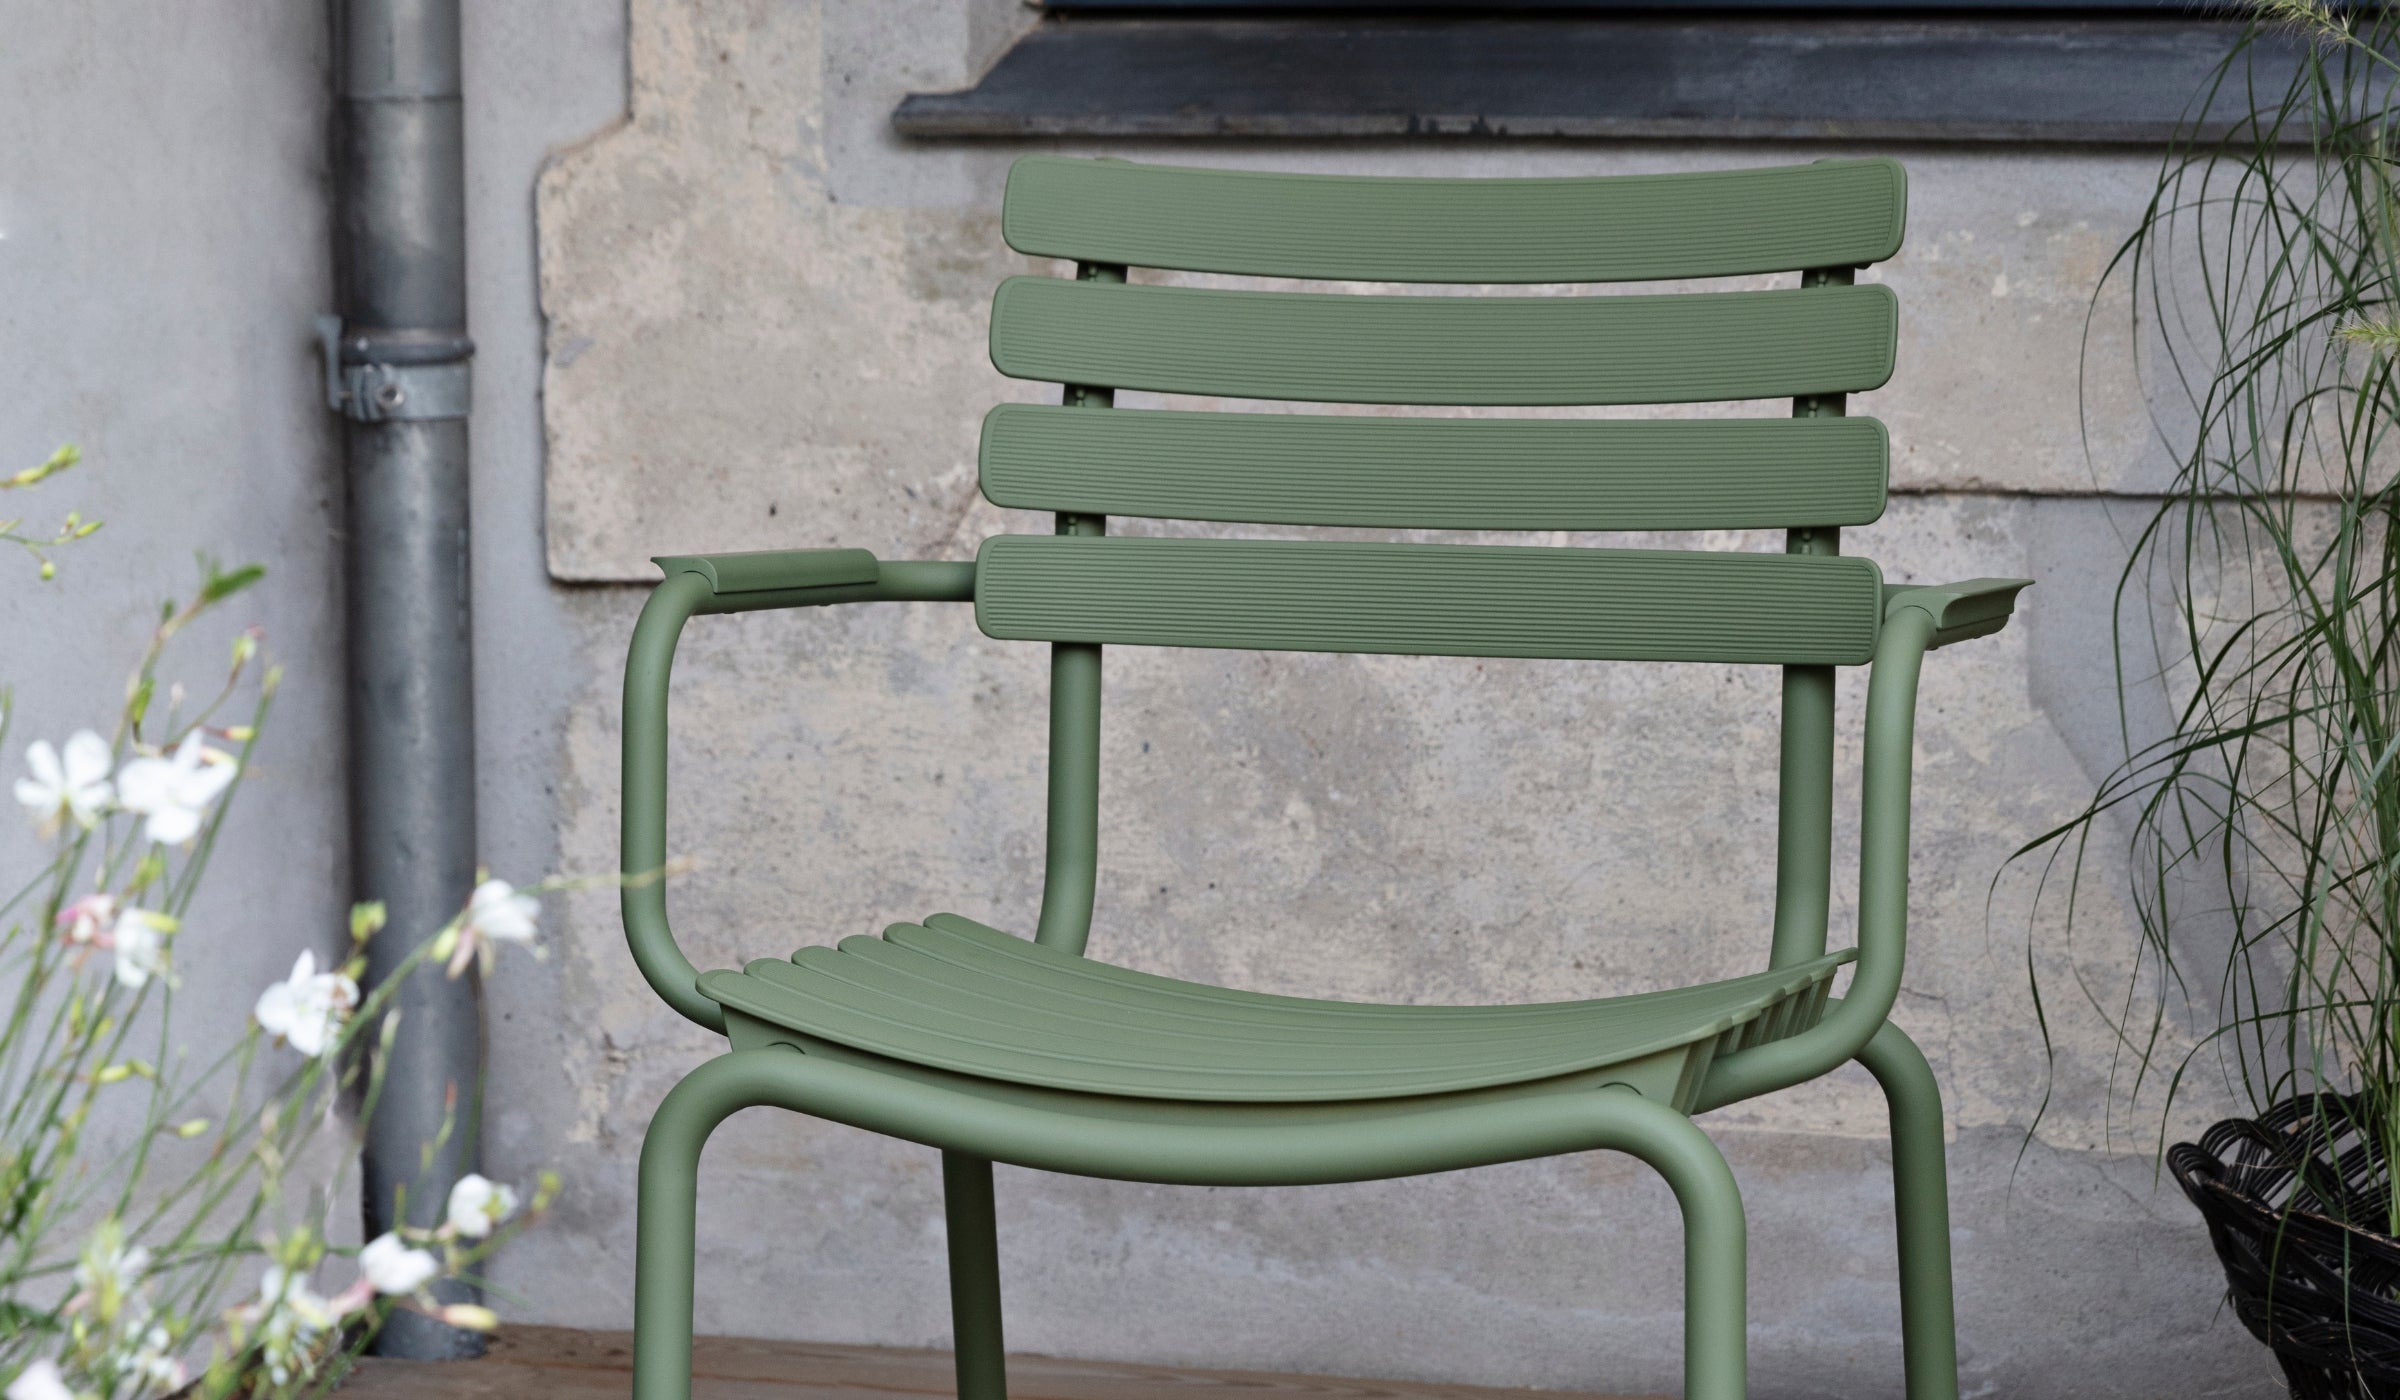 Reclips - Chaise d'extérieur en aluminium et plastique recyclé avec accoudoirs, vert olive